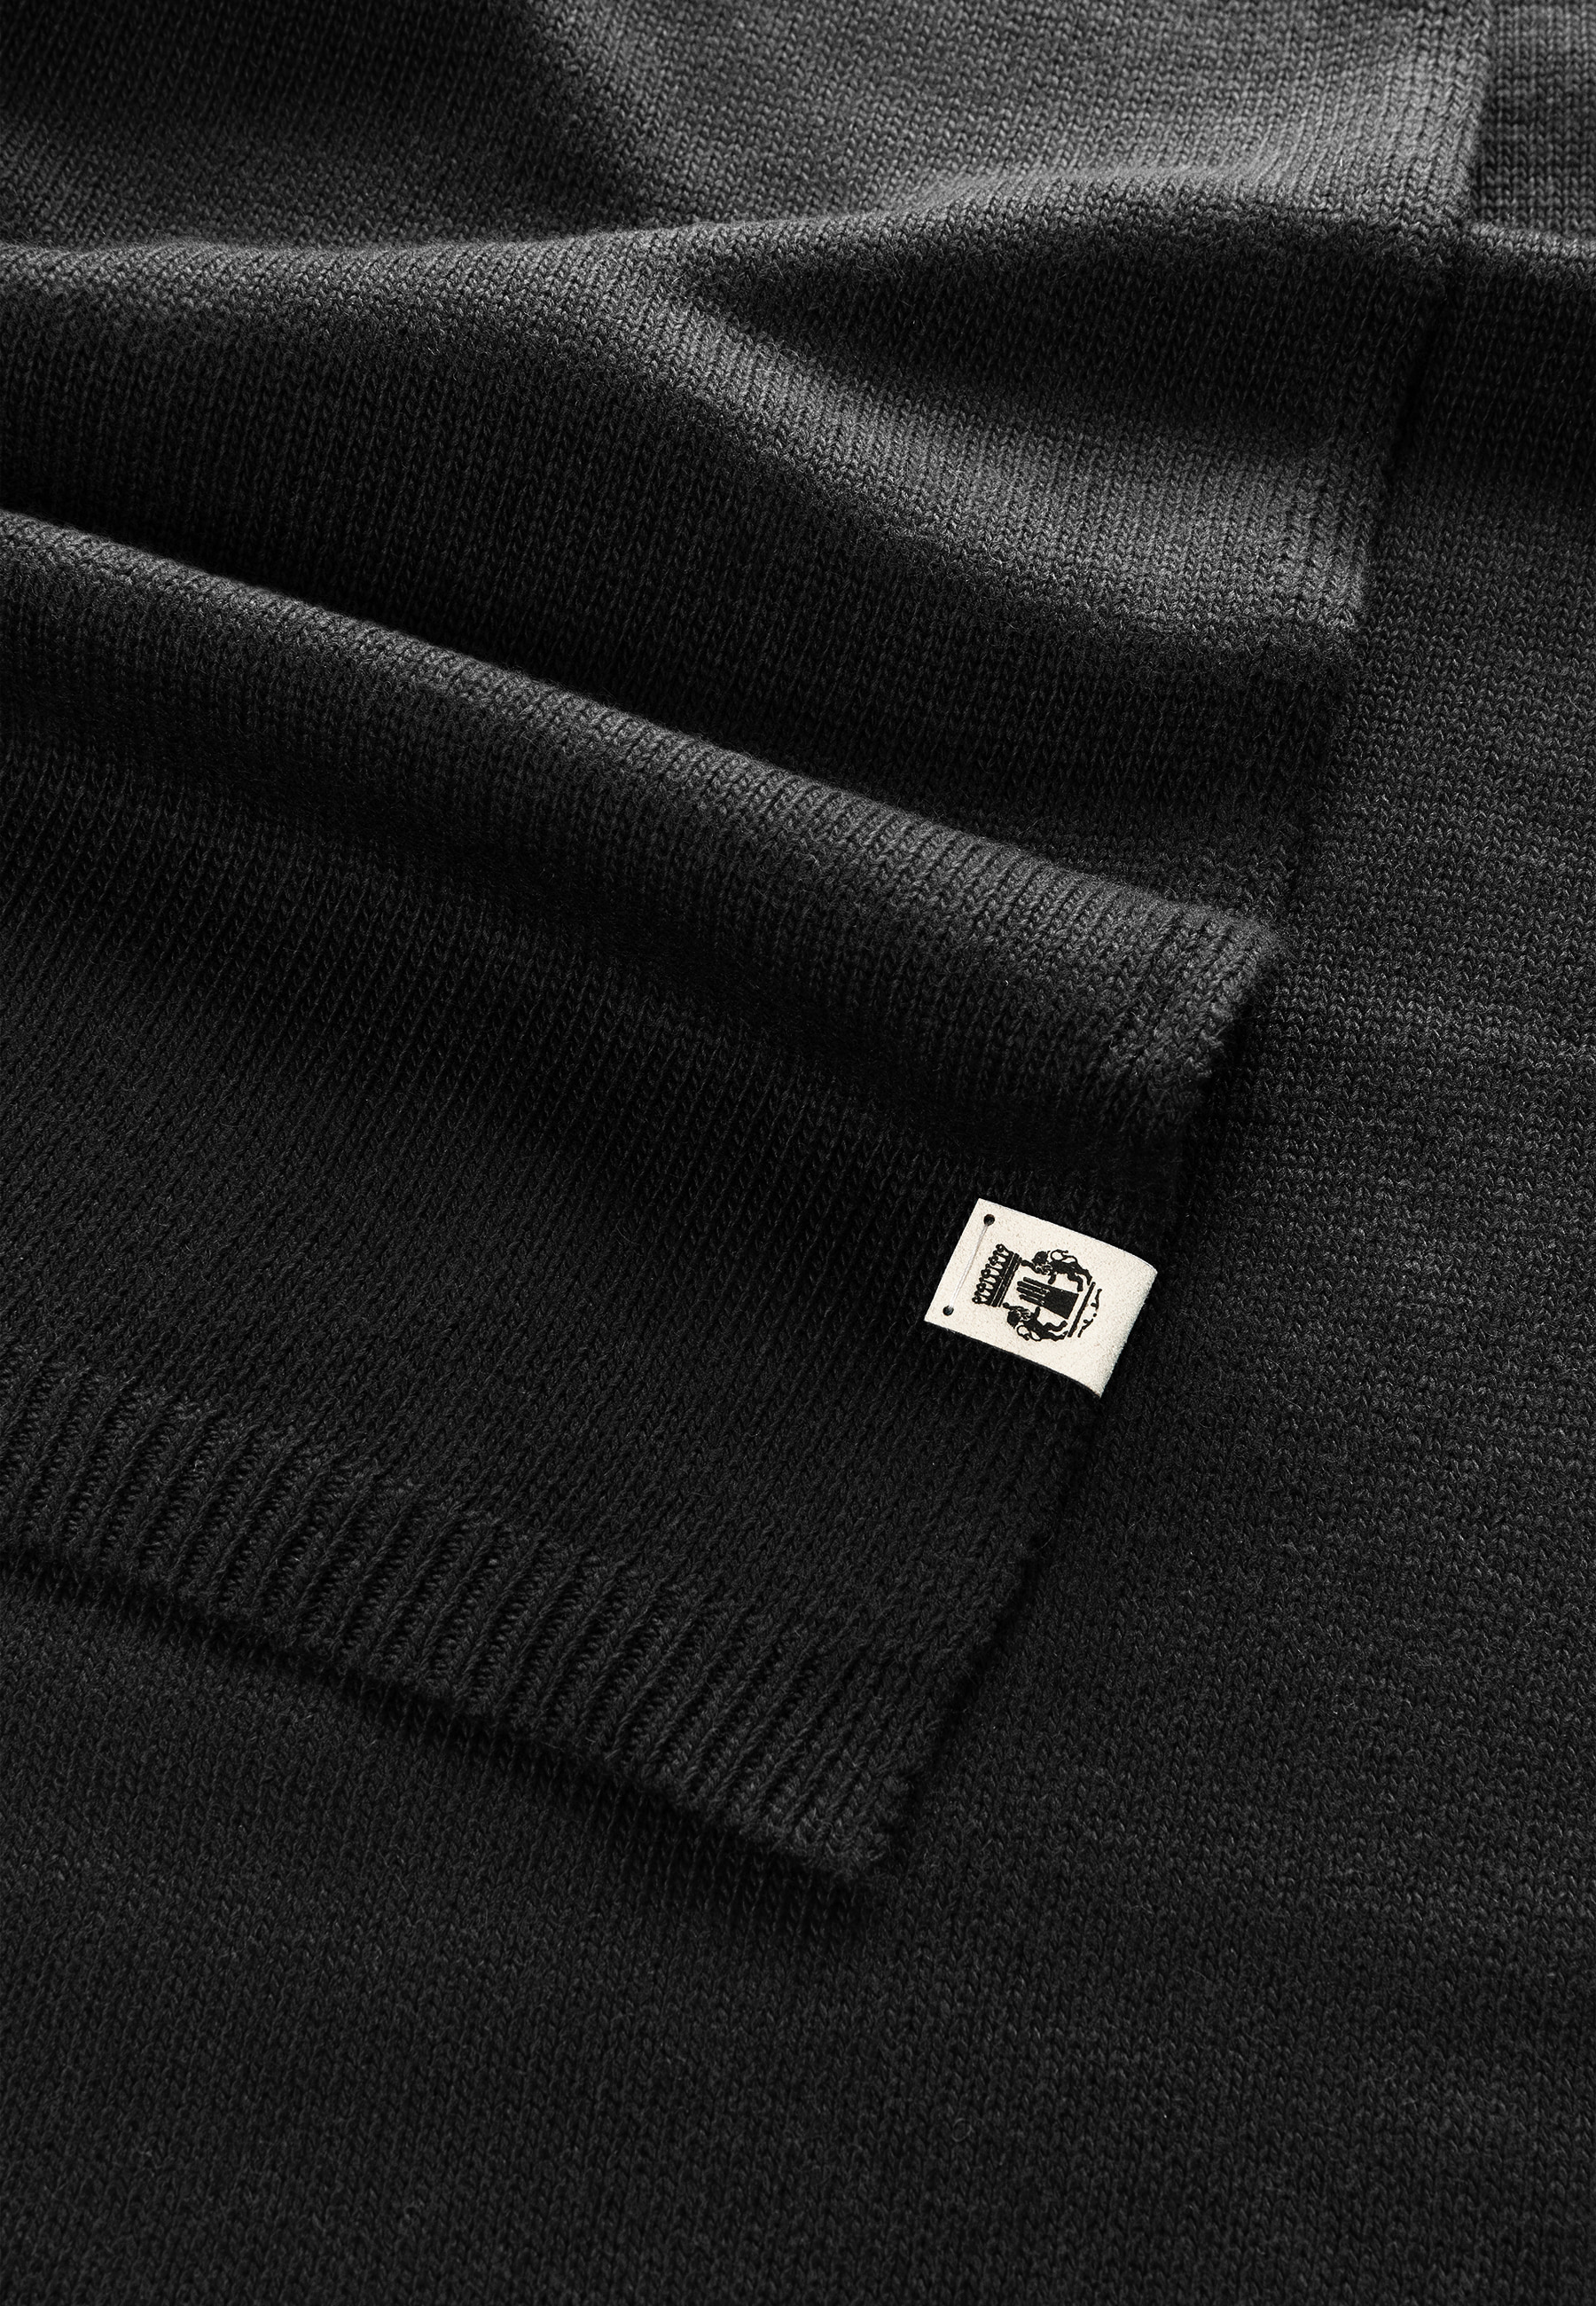 Shop 35x180 im Schal - ROECKL Online black Essential